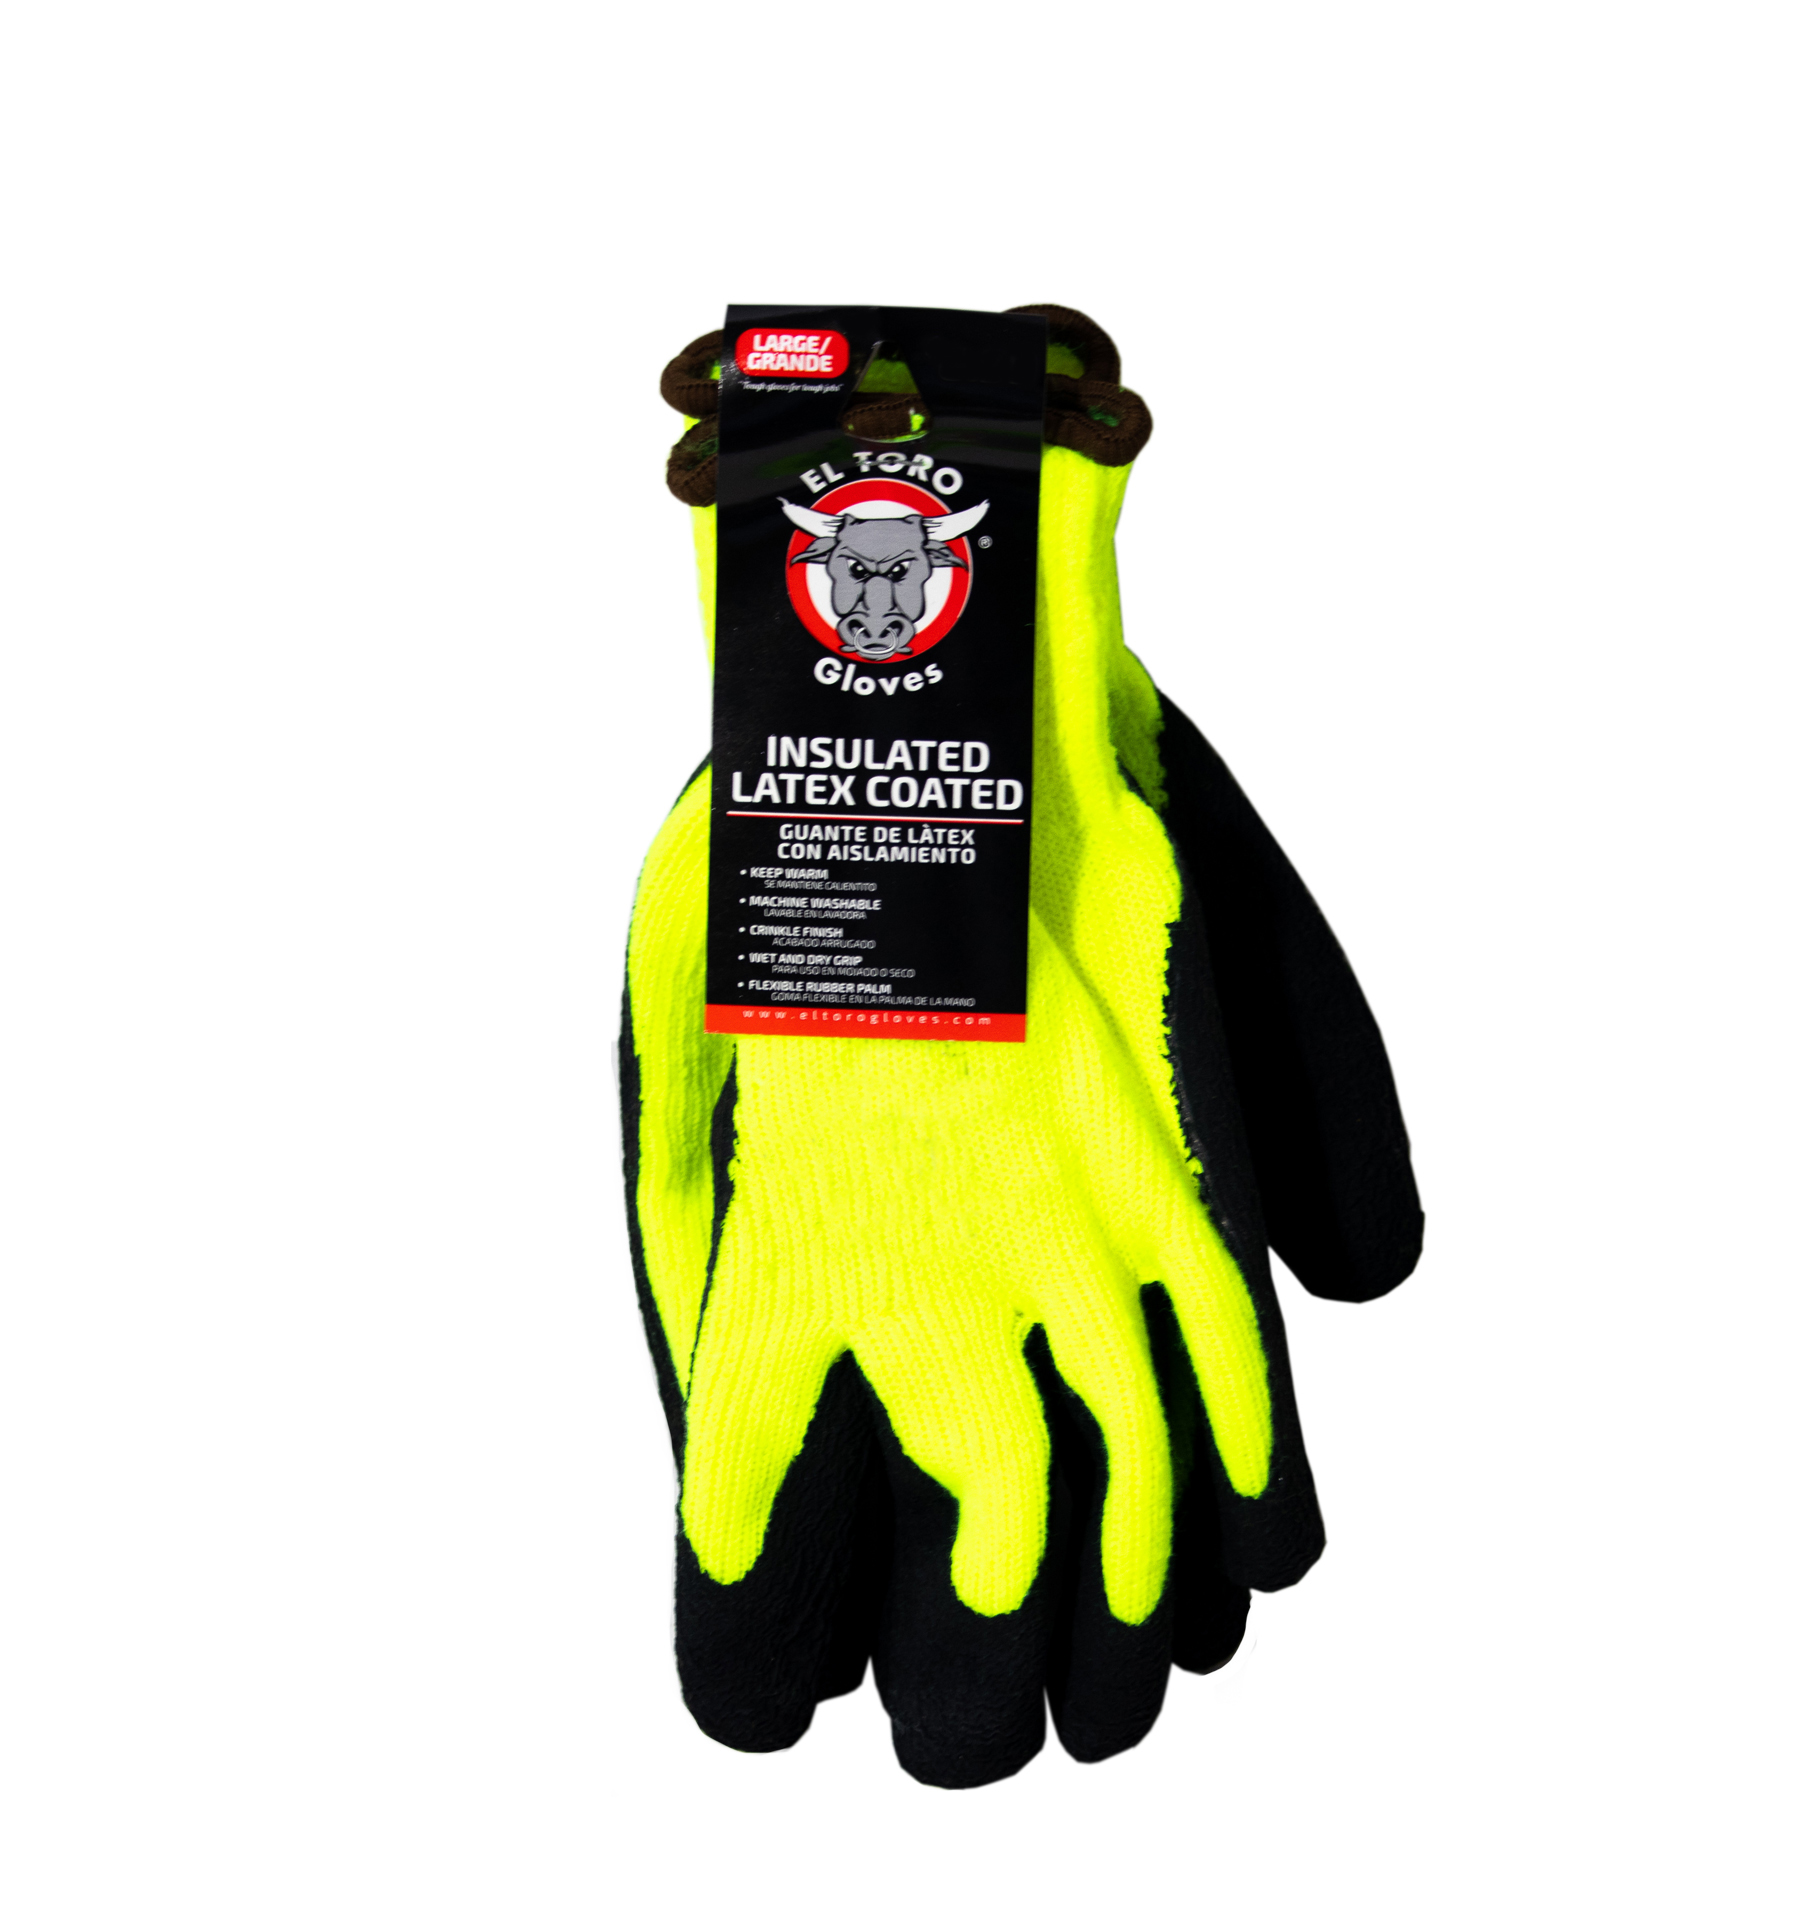 El Toro Gloves